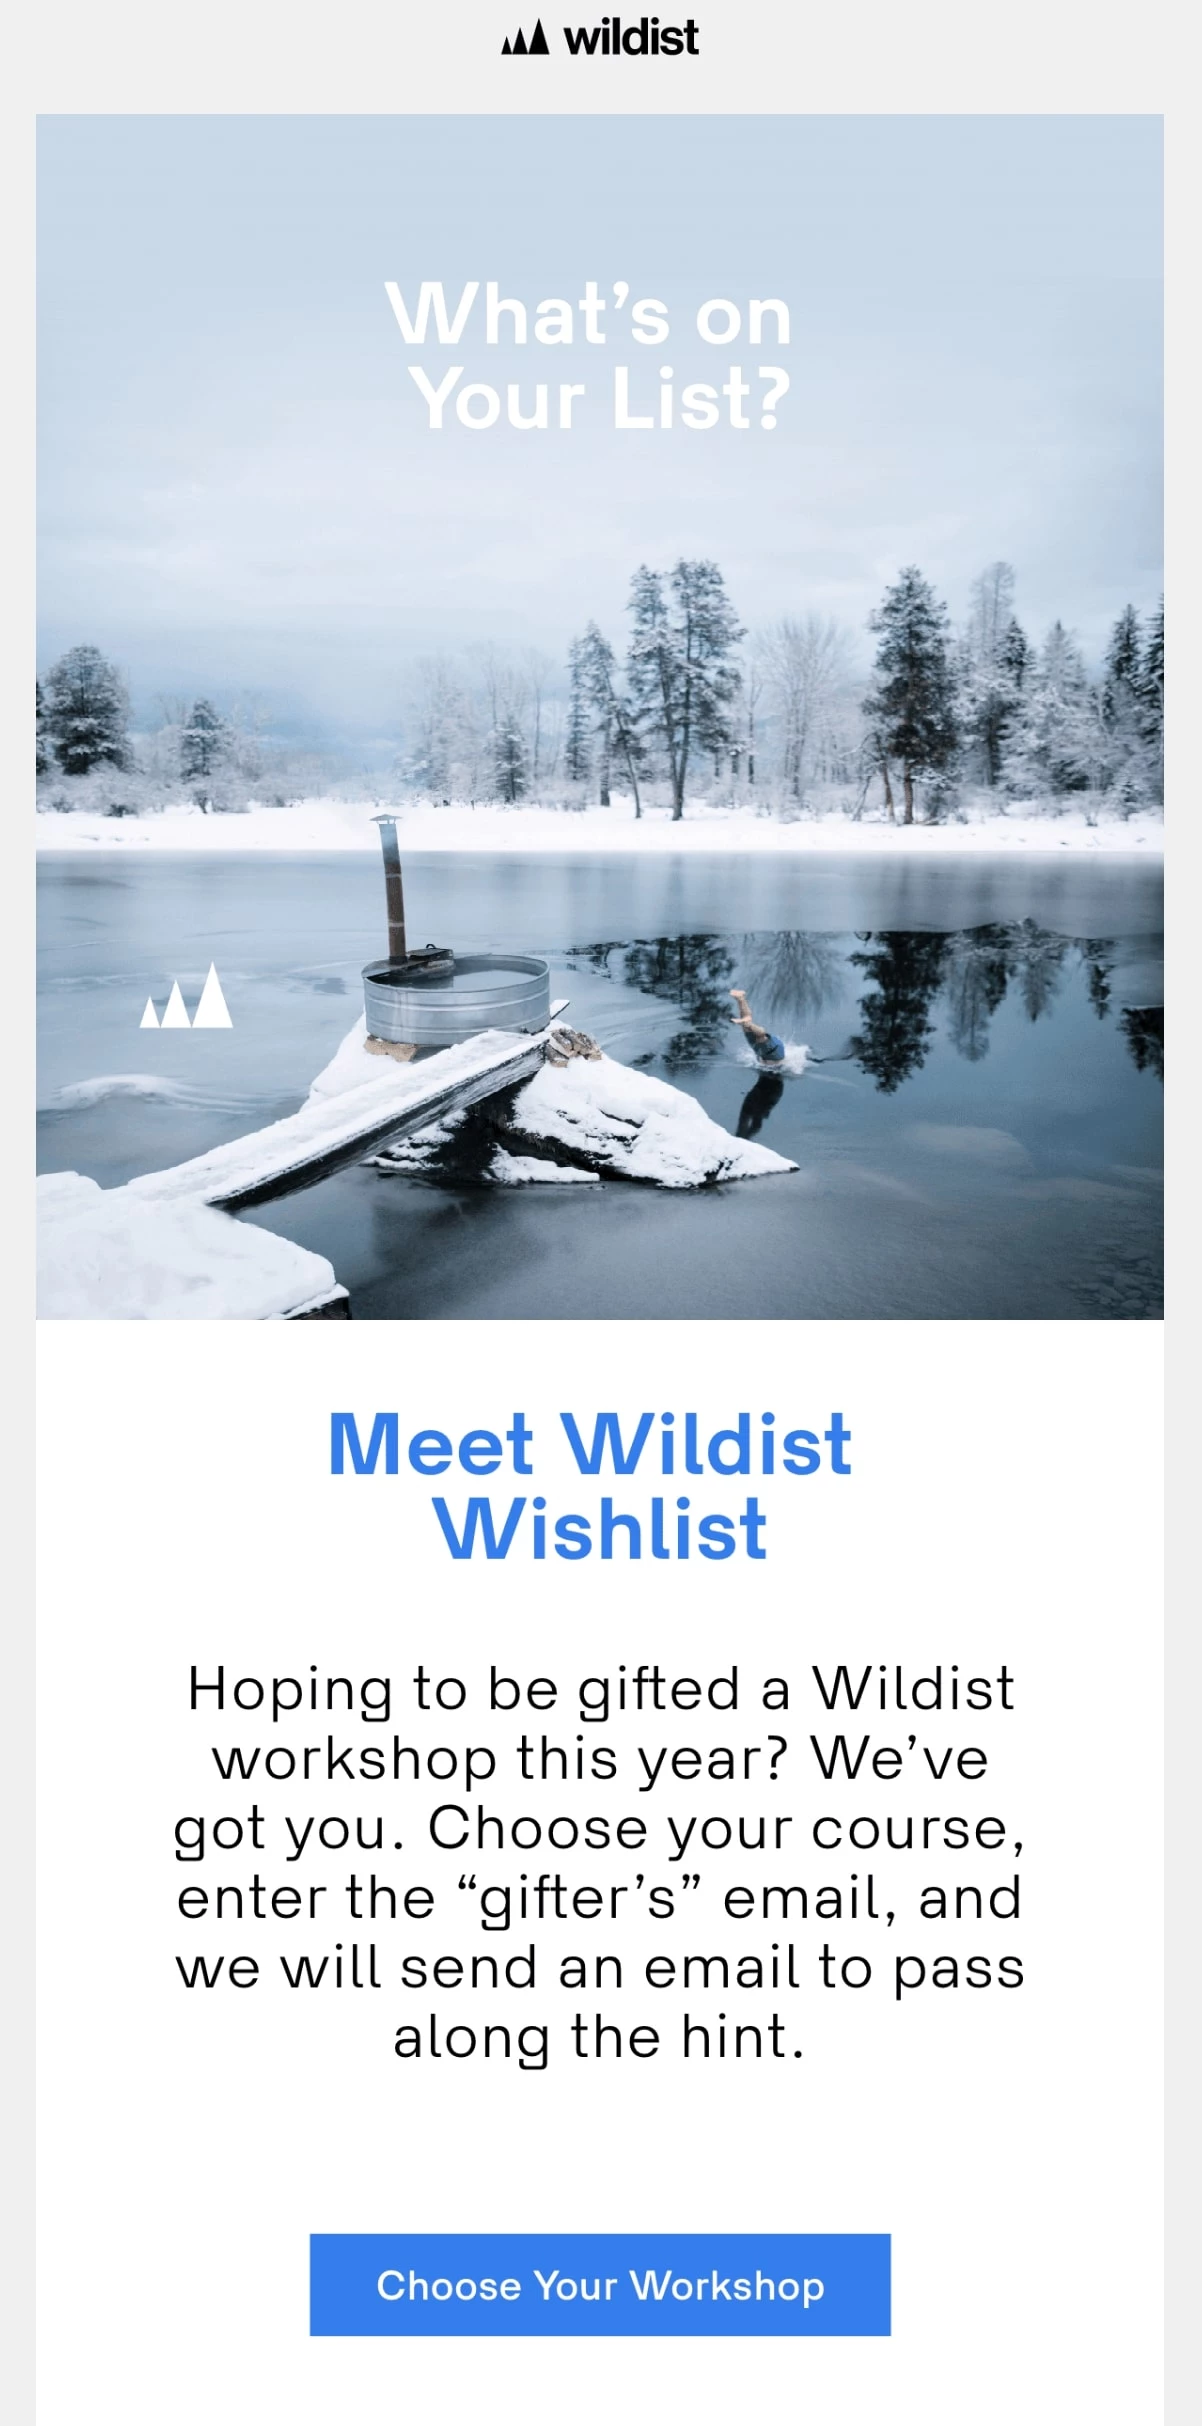 Wildist wishlisht email forwarding example